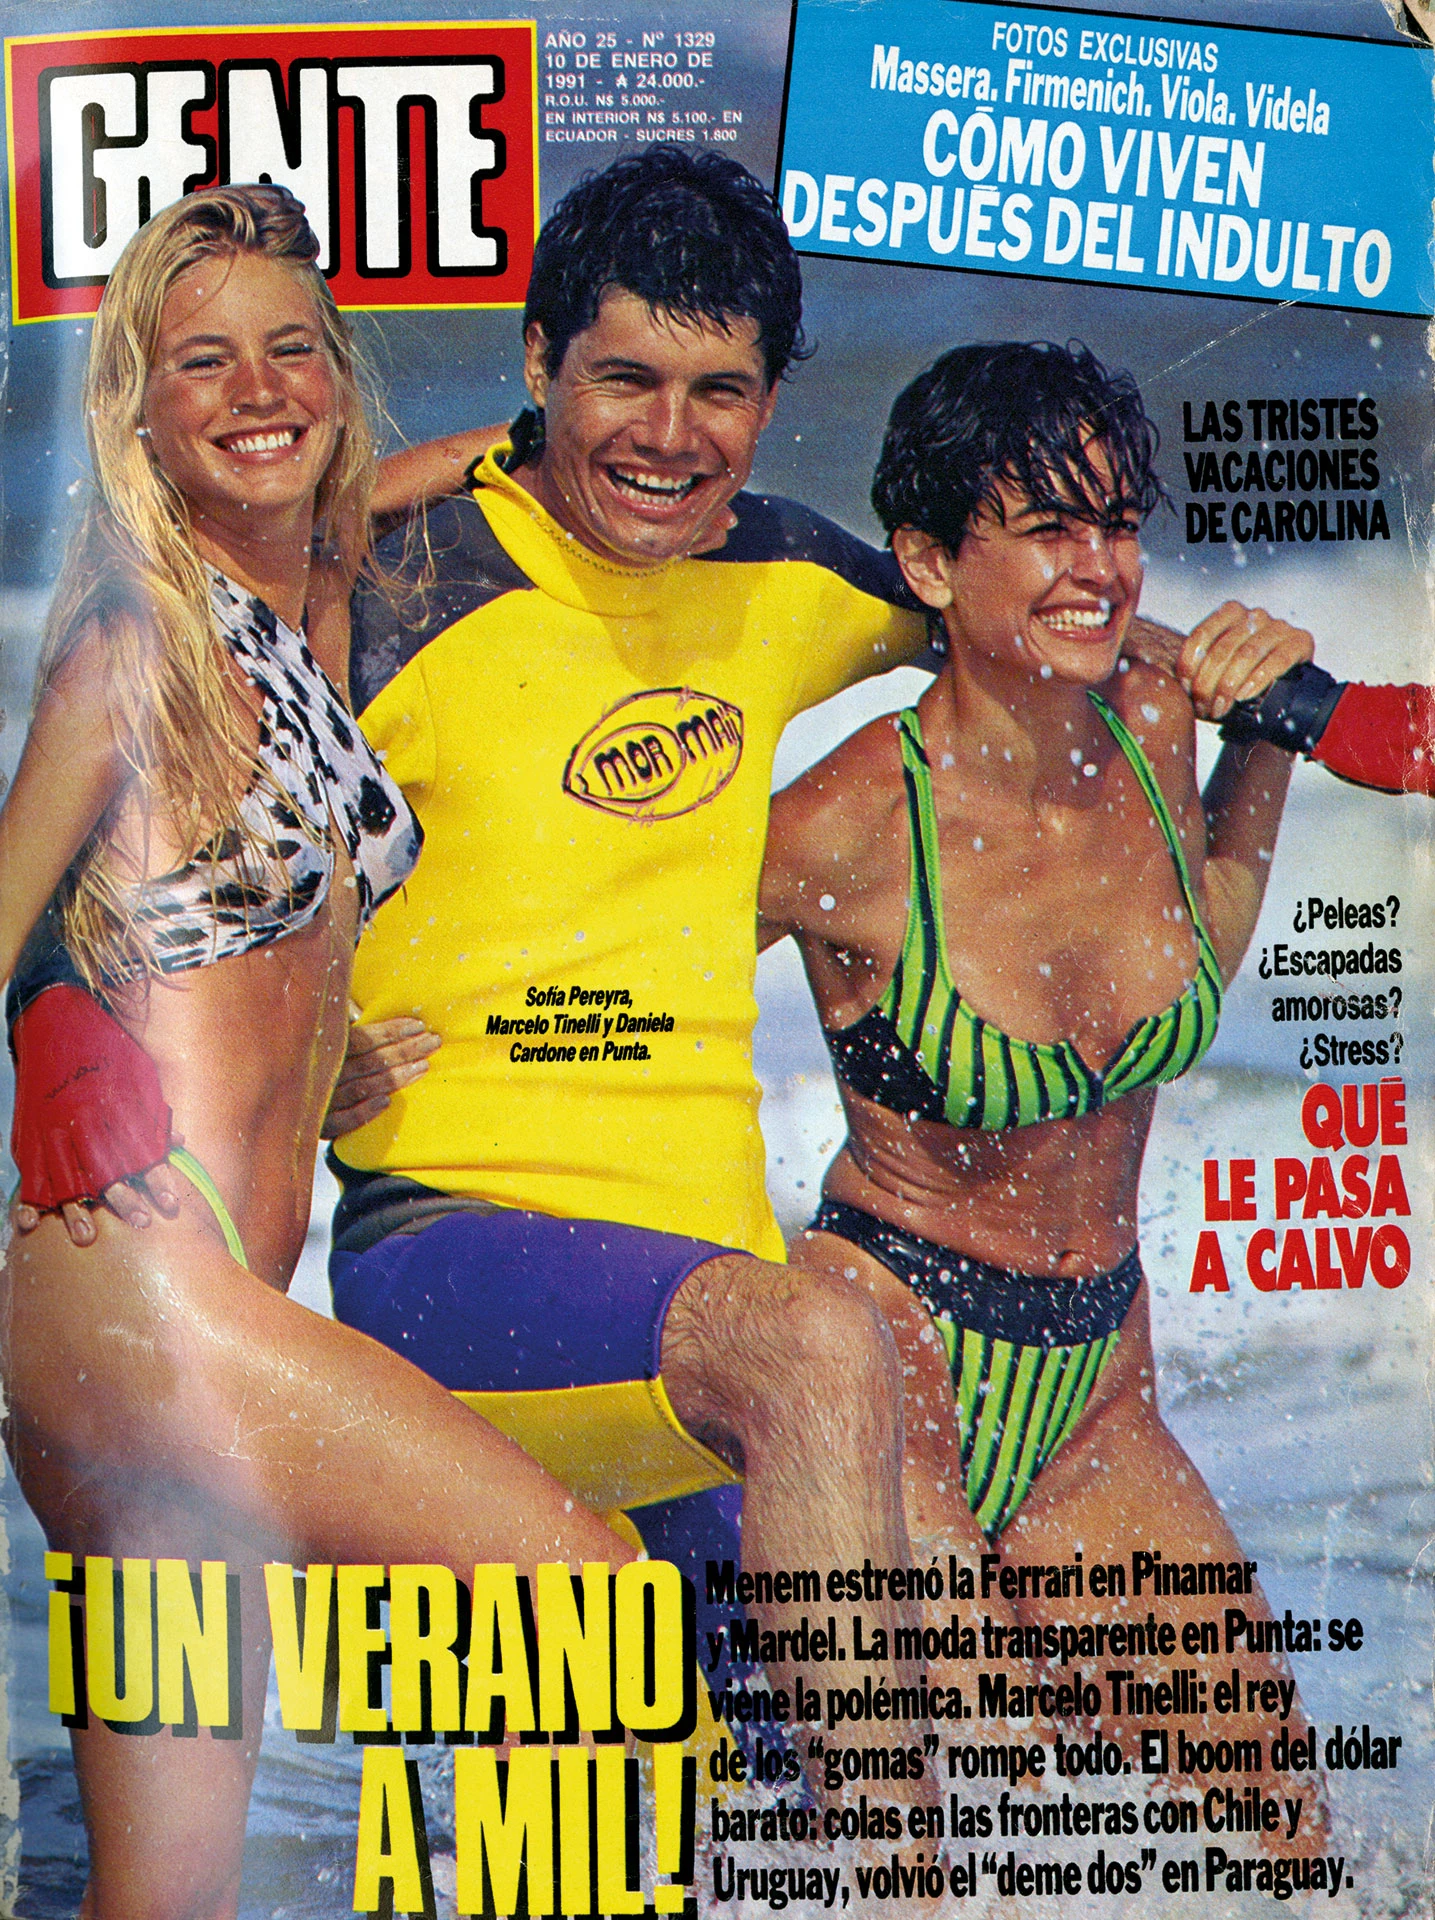 El "Rey de los Gomas" en la tapa veraniega de GENTE de 1991, junto a Daniela Cardone y Sofía Pereyra.